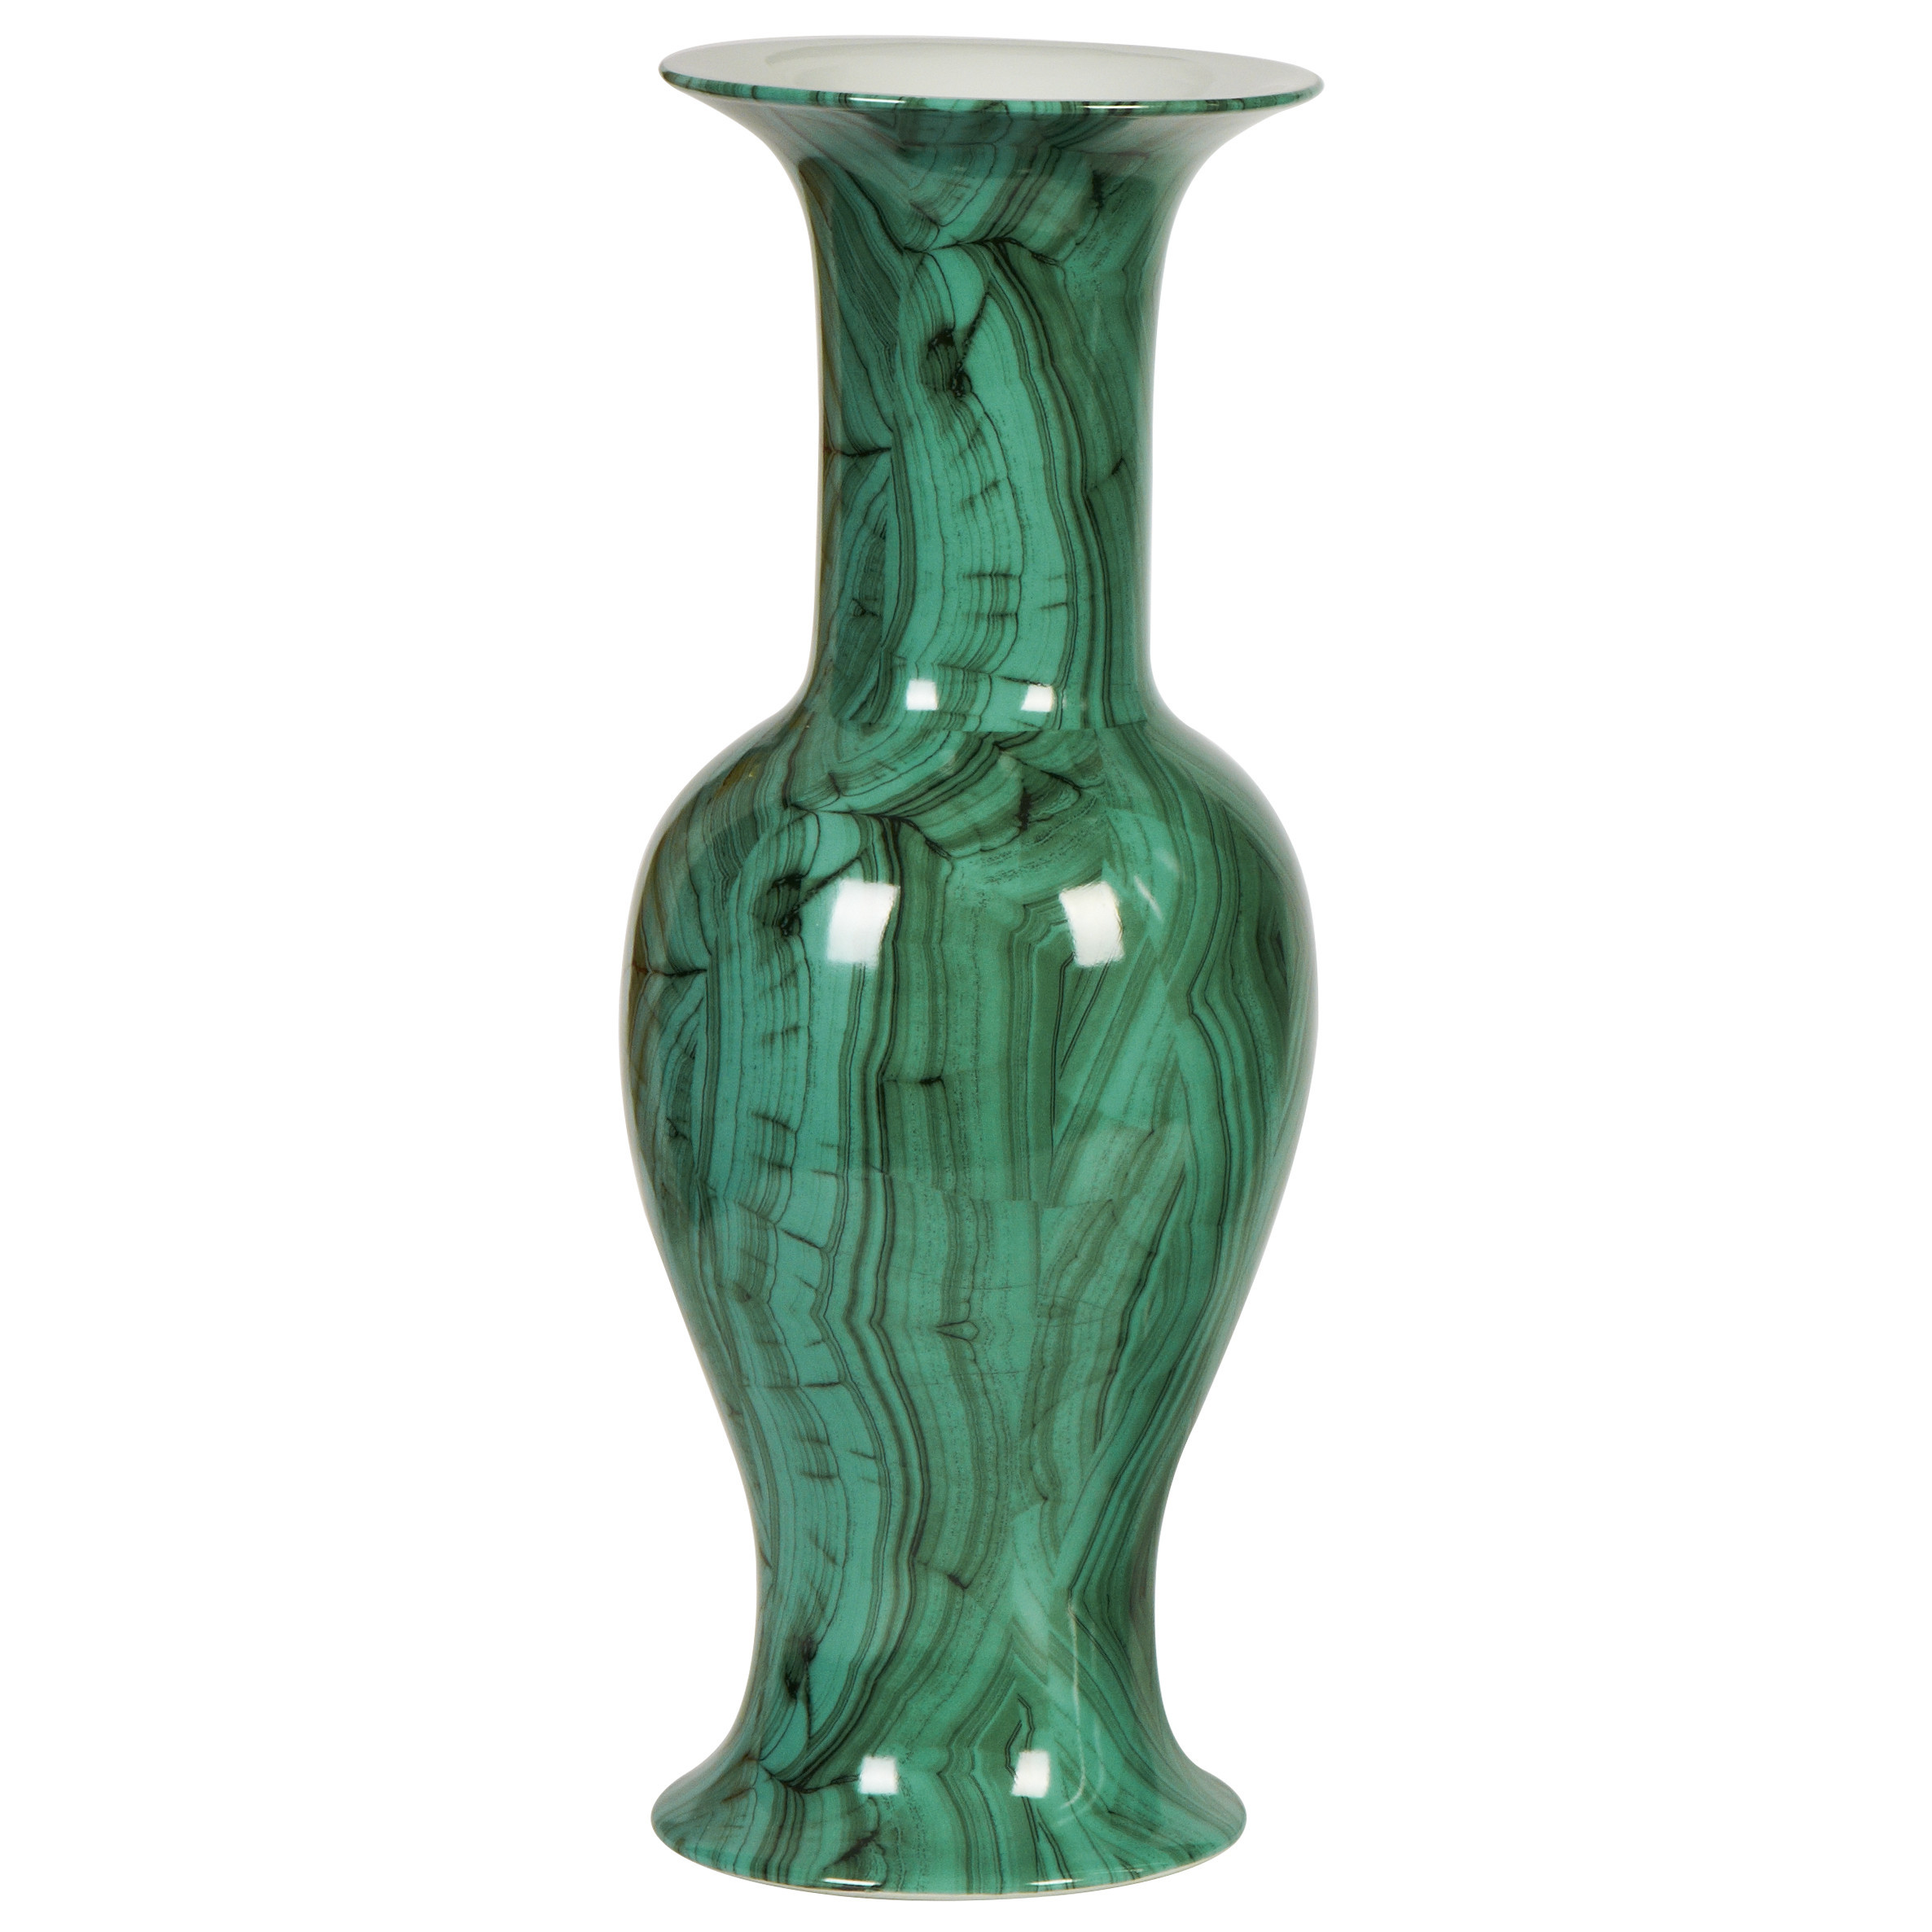 16 Famous Green Glass Bottle Vase 2023 free download green glass bottle vase of forest green baluster porcelain vase vases inside forest green baluster porcelain vase at belleandjune com vases